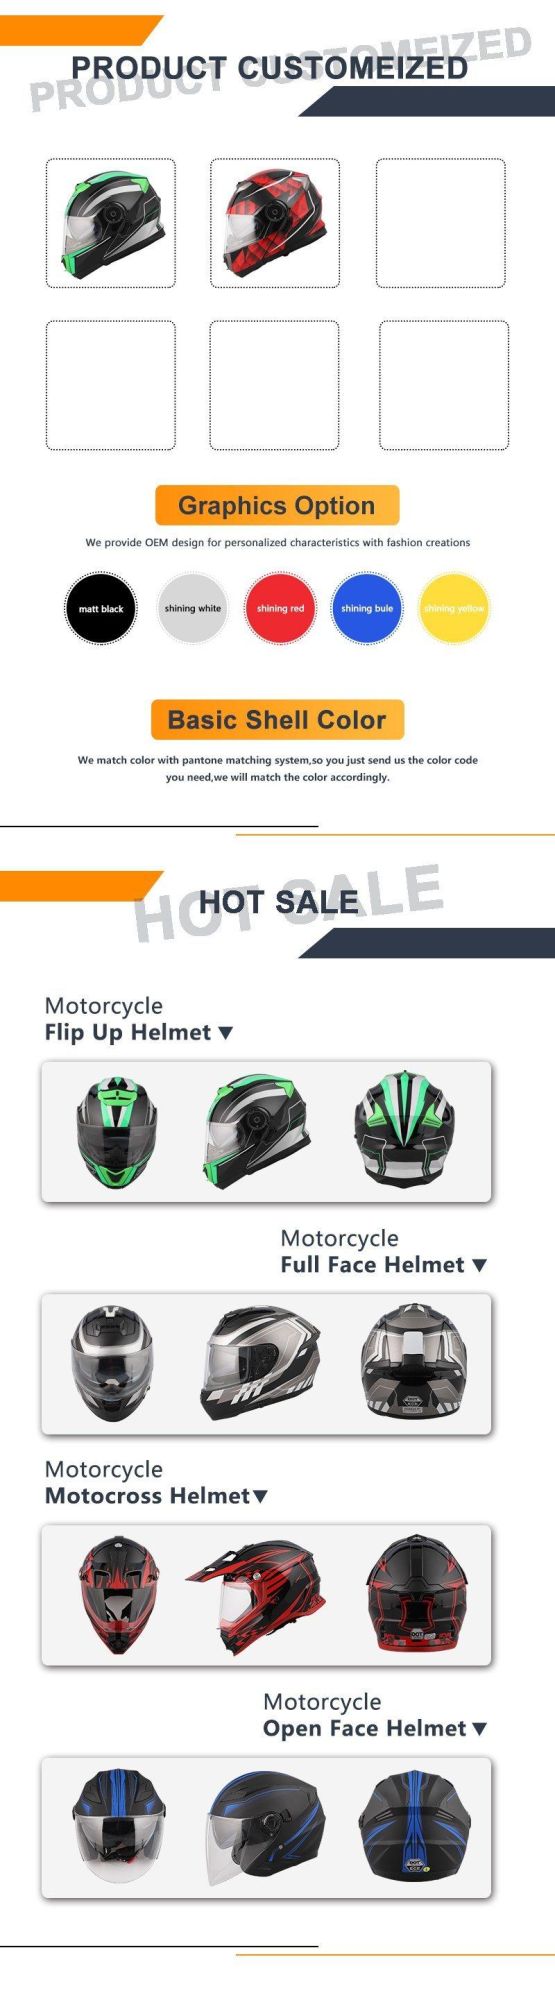 Motorcycle Helmet Dirt Bike Go Karting UTV/ATV Helmet Adult Men